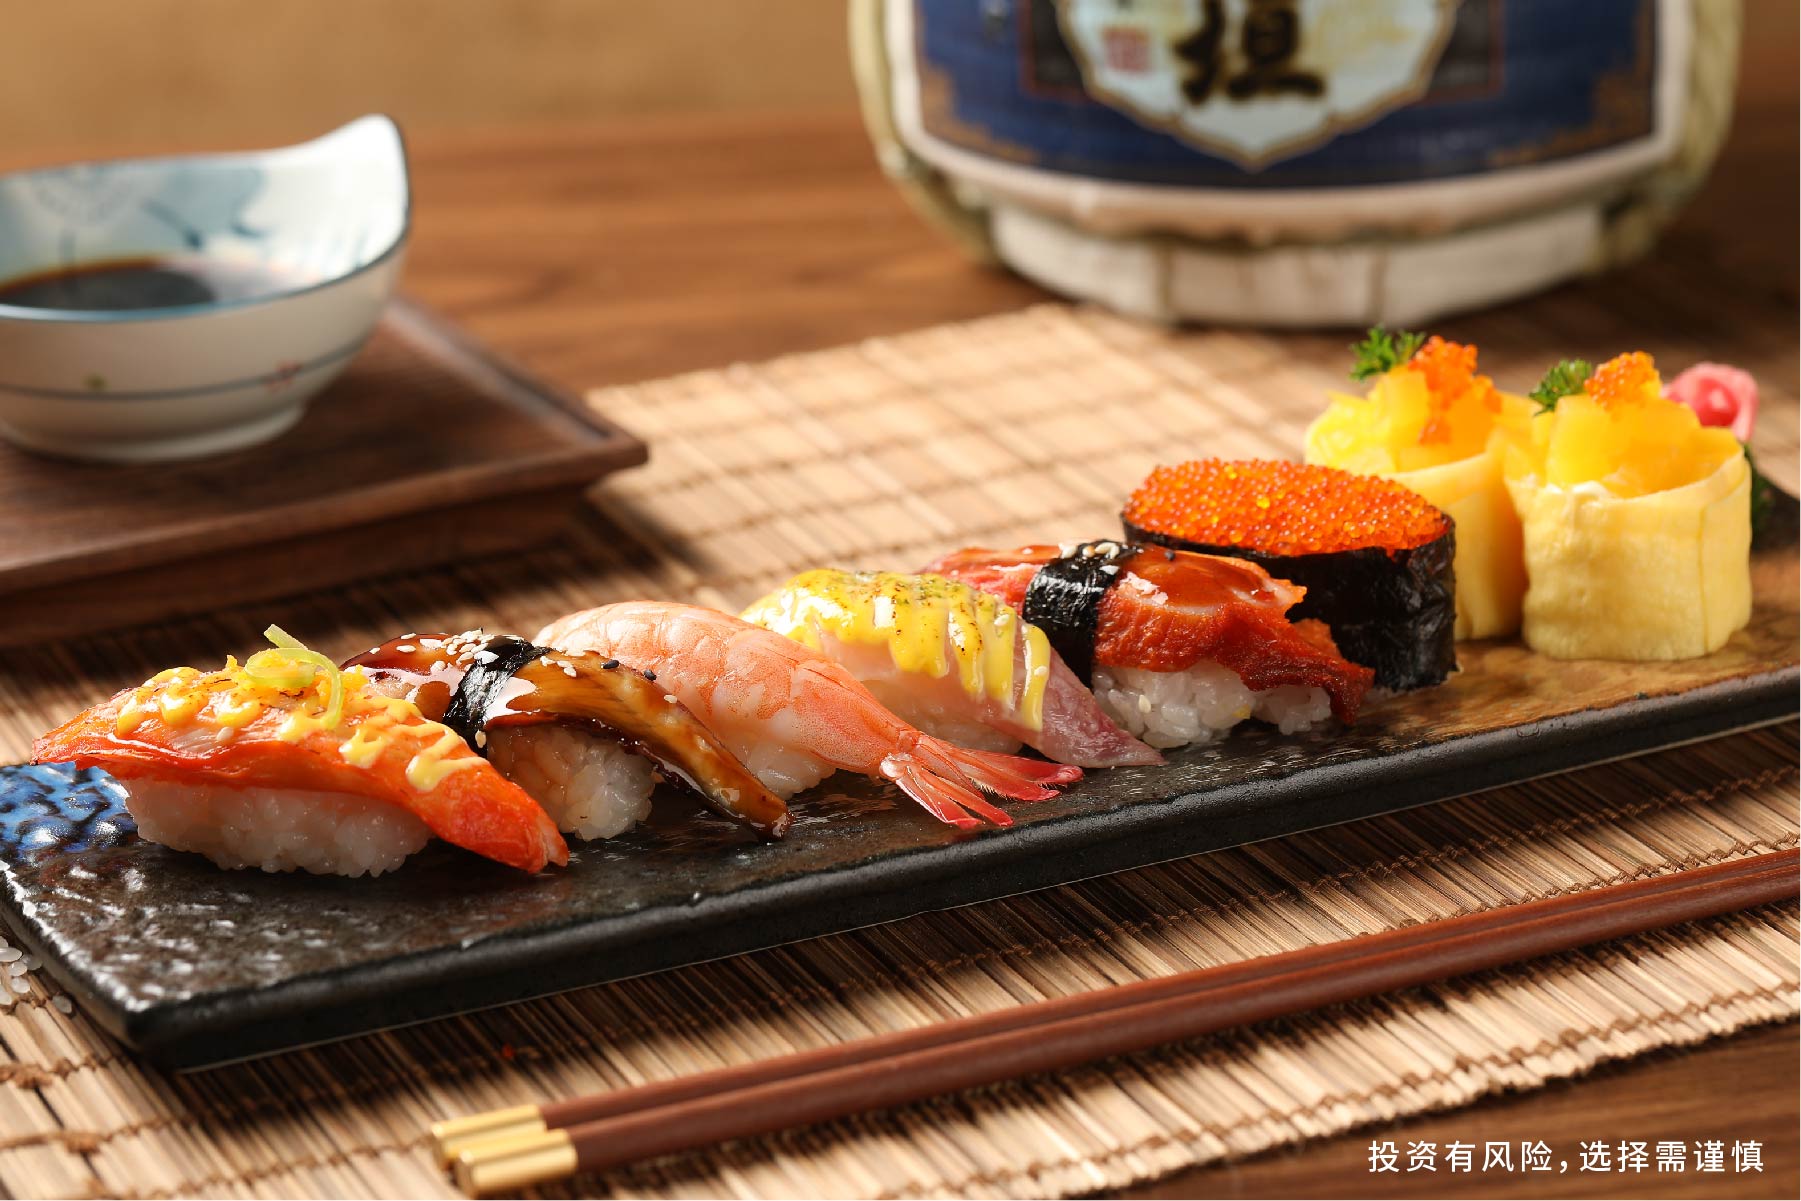 时下热门的寿司加盟项目你了解多少?